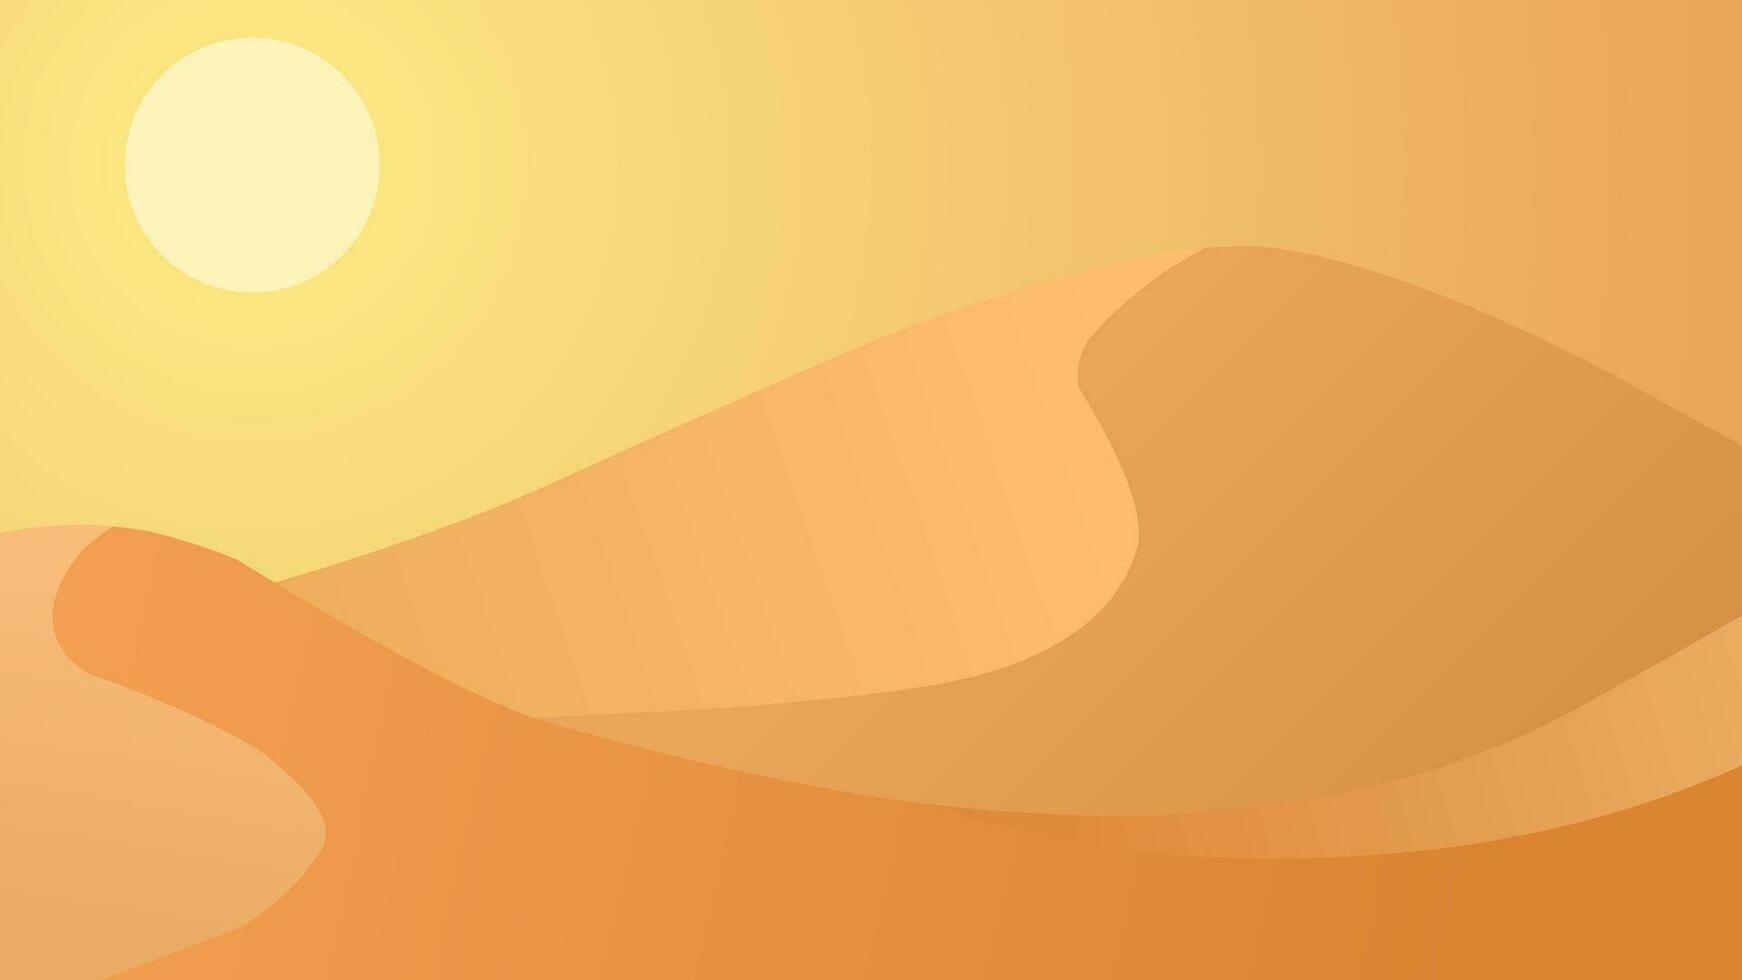 Wüste Landschaft Vektor Illustration. Sand Wüste Landschaft mit Hitze Sonne und Düne. subtropisch Wüste Landschaft zum Hintergrund, Hintergrund oder Landung Seite